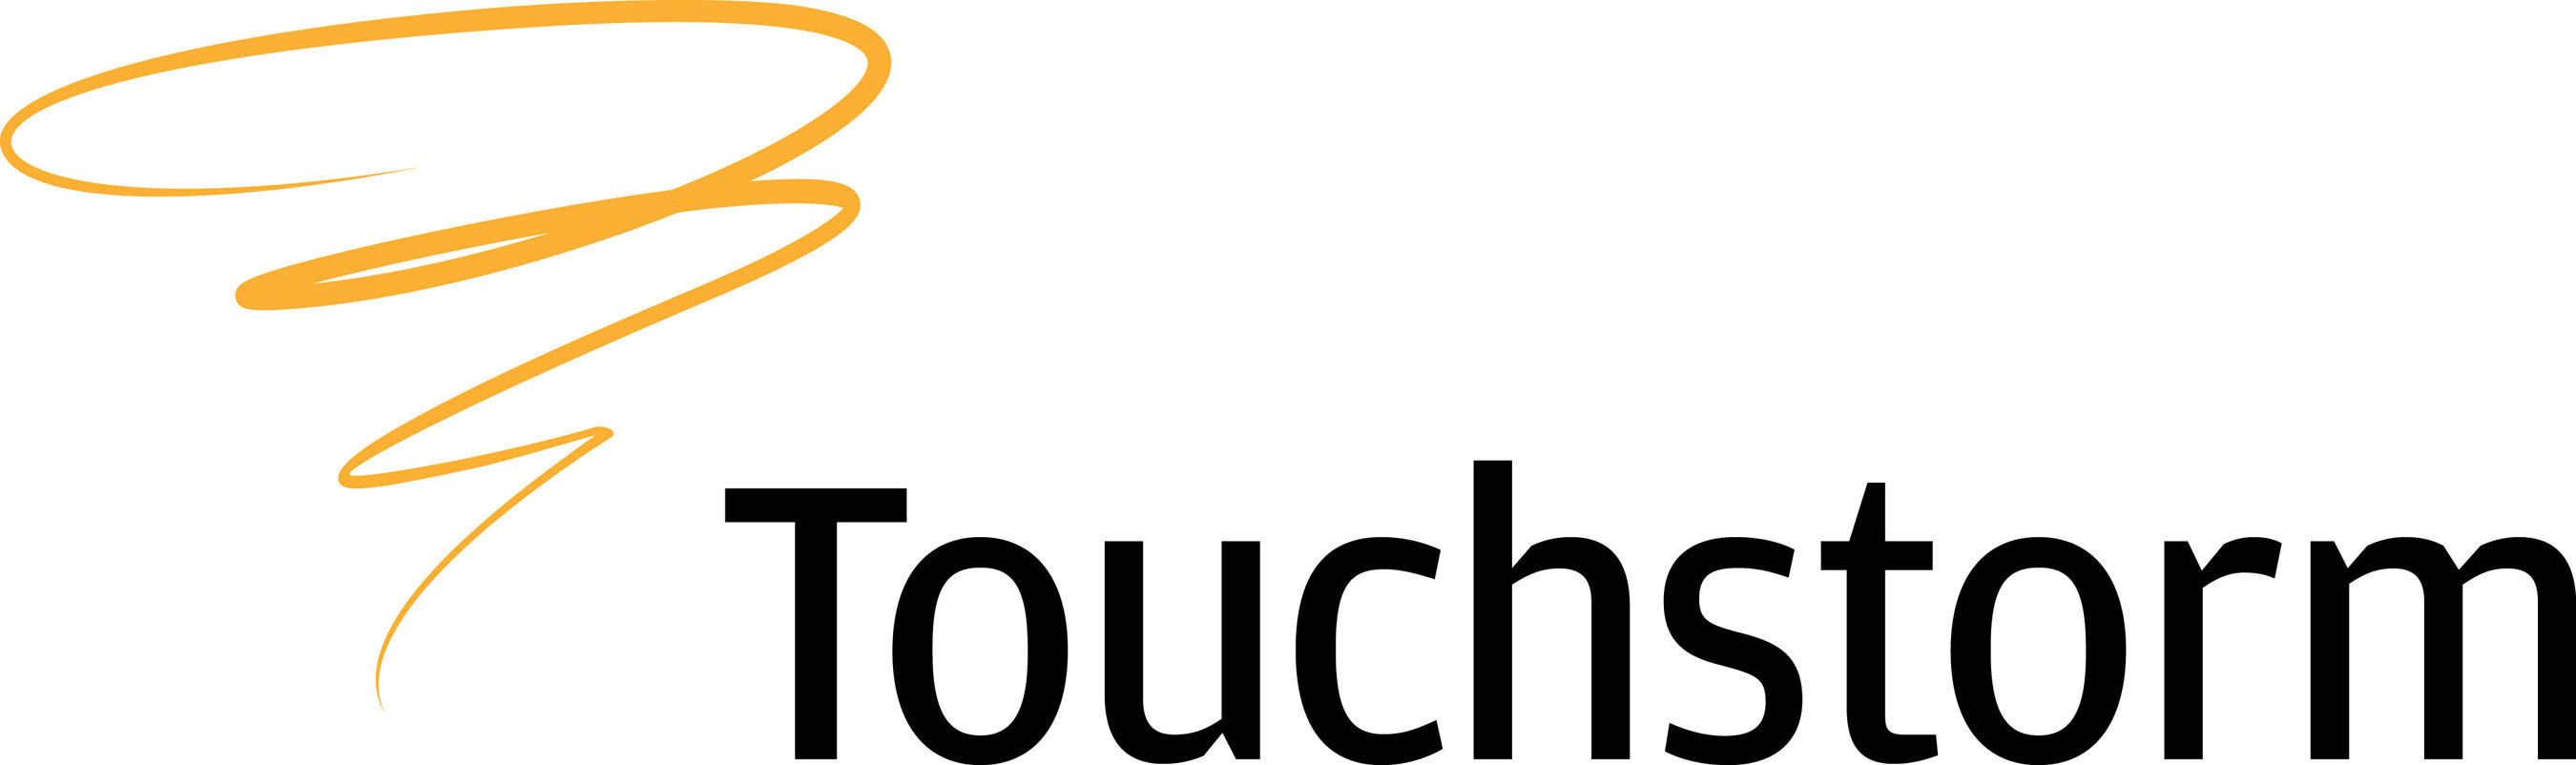 Touchstorm logo. (PRNewsFoto/Touchstorm) (PRNewsFoto/TOUCHSTORM)